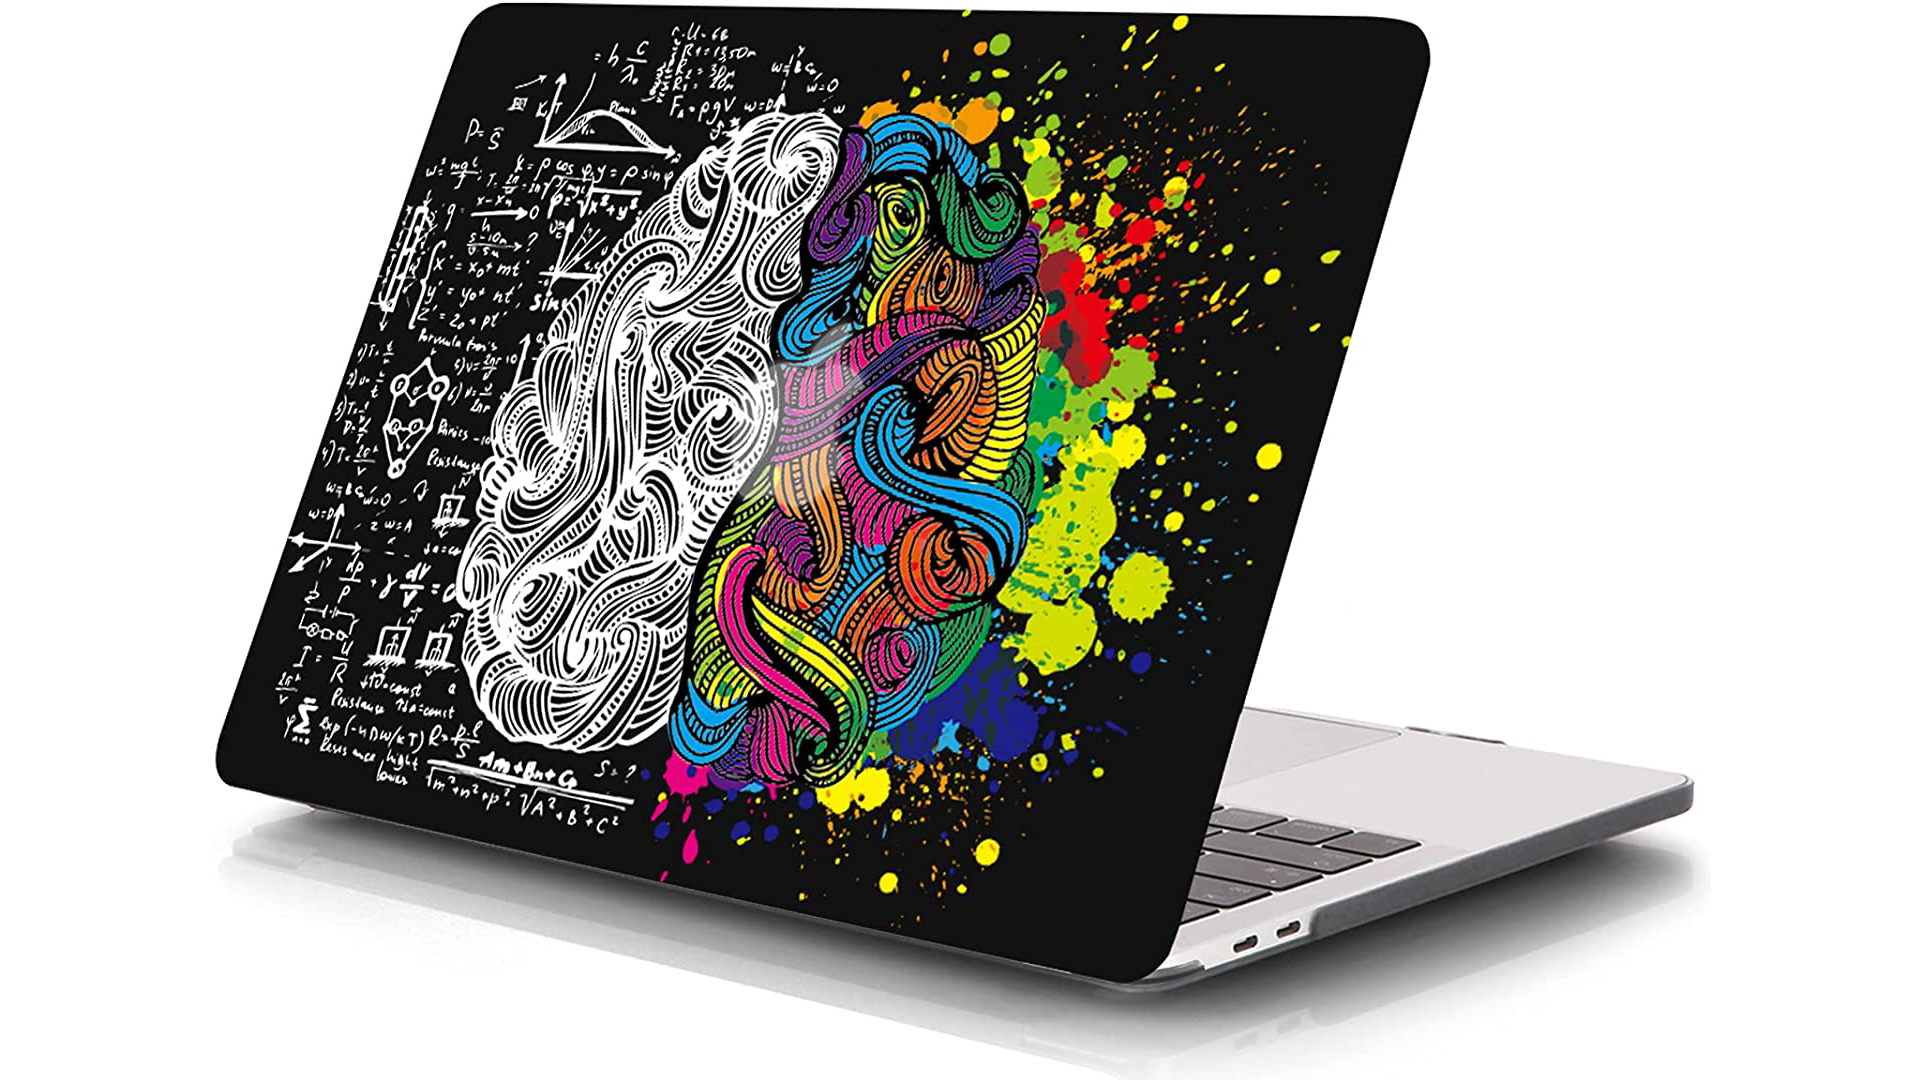 iCasso MacBook Pro brain design case